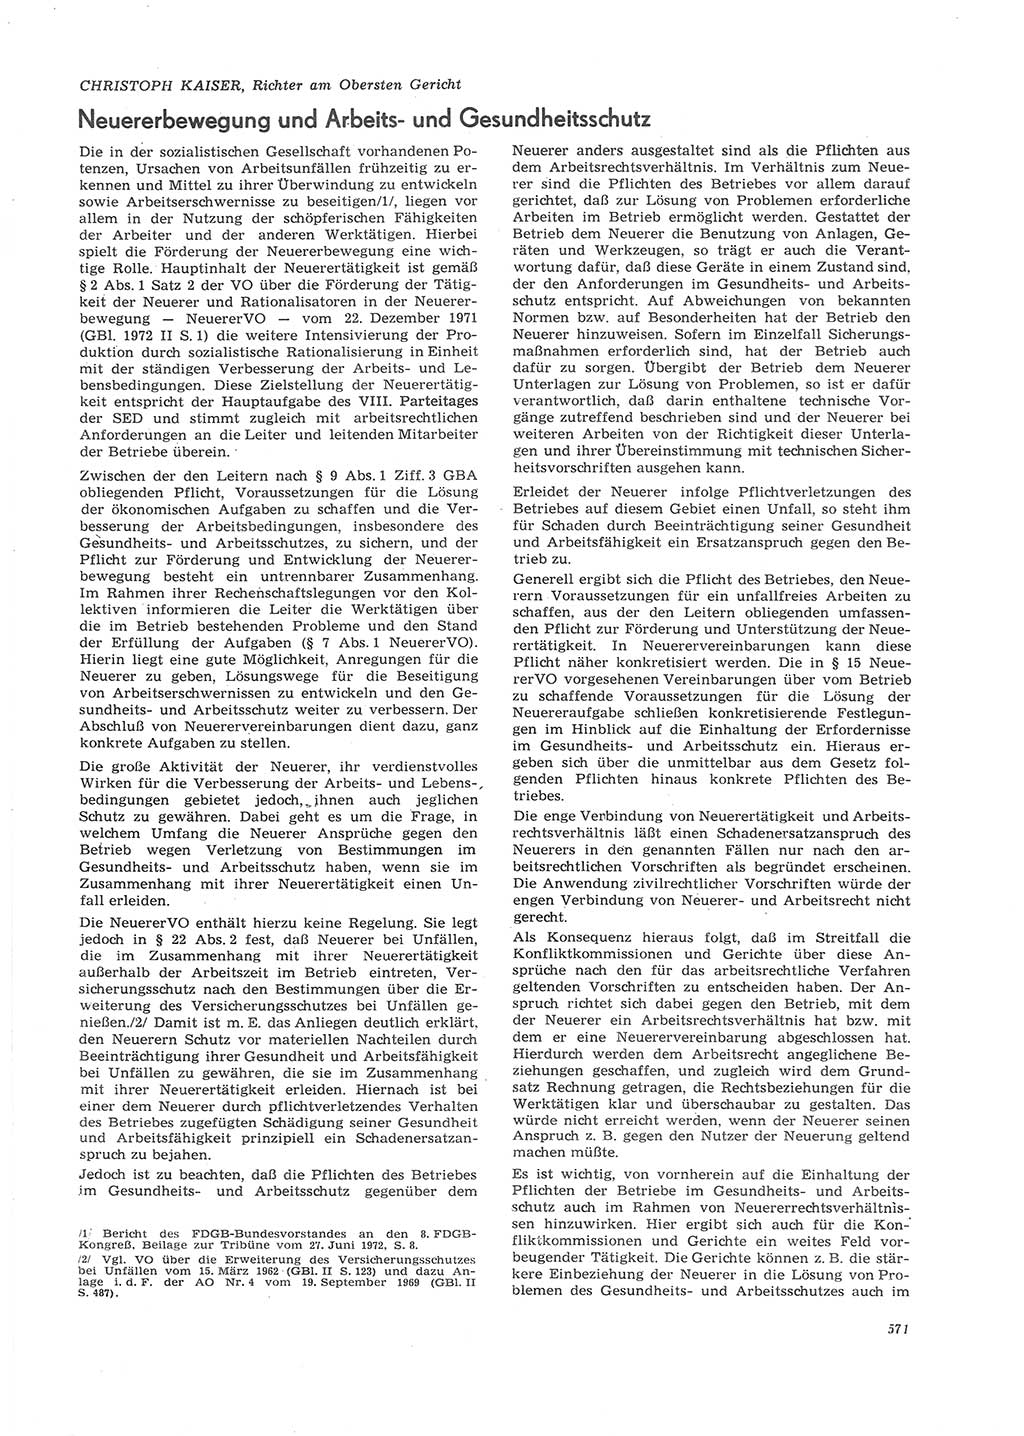 Neue Justiz (NJ), Zeitschrift für Recht und Rechtswissenschaft [Deutsche Demokratische Republik (DDR)], 26. Jahrgang 1972, Seite 571 (NJ DDR 1972, S. 571)